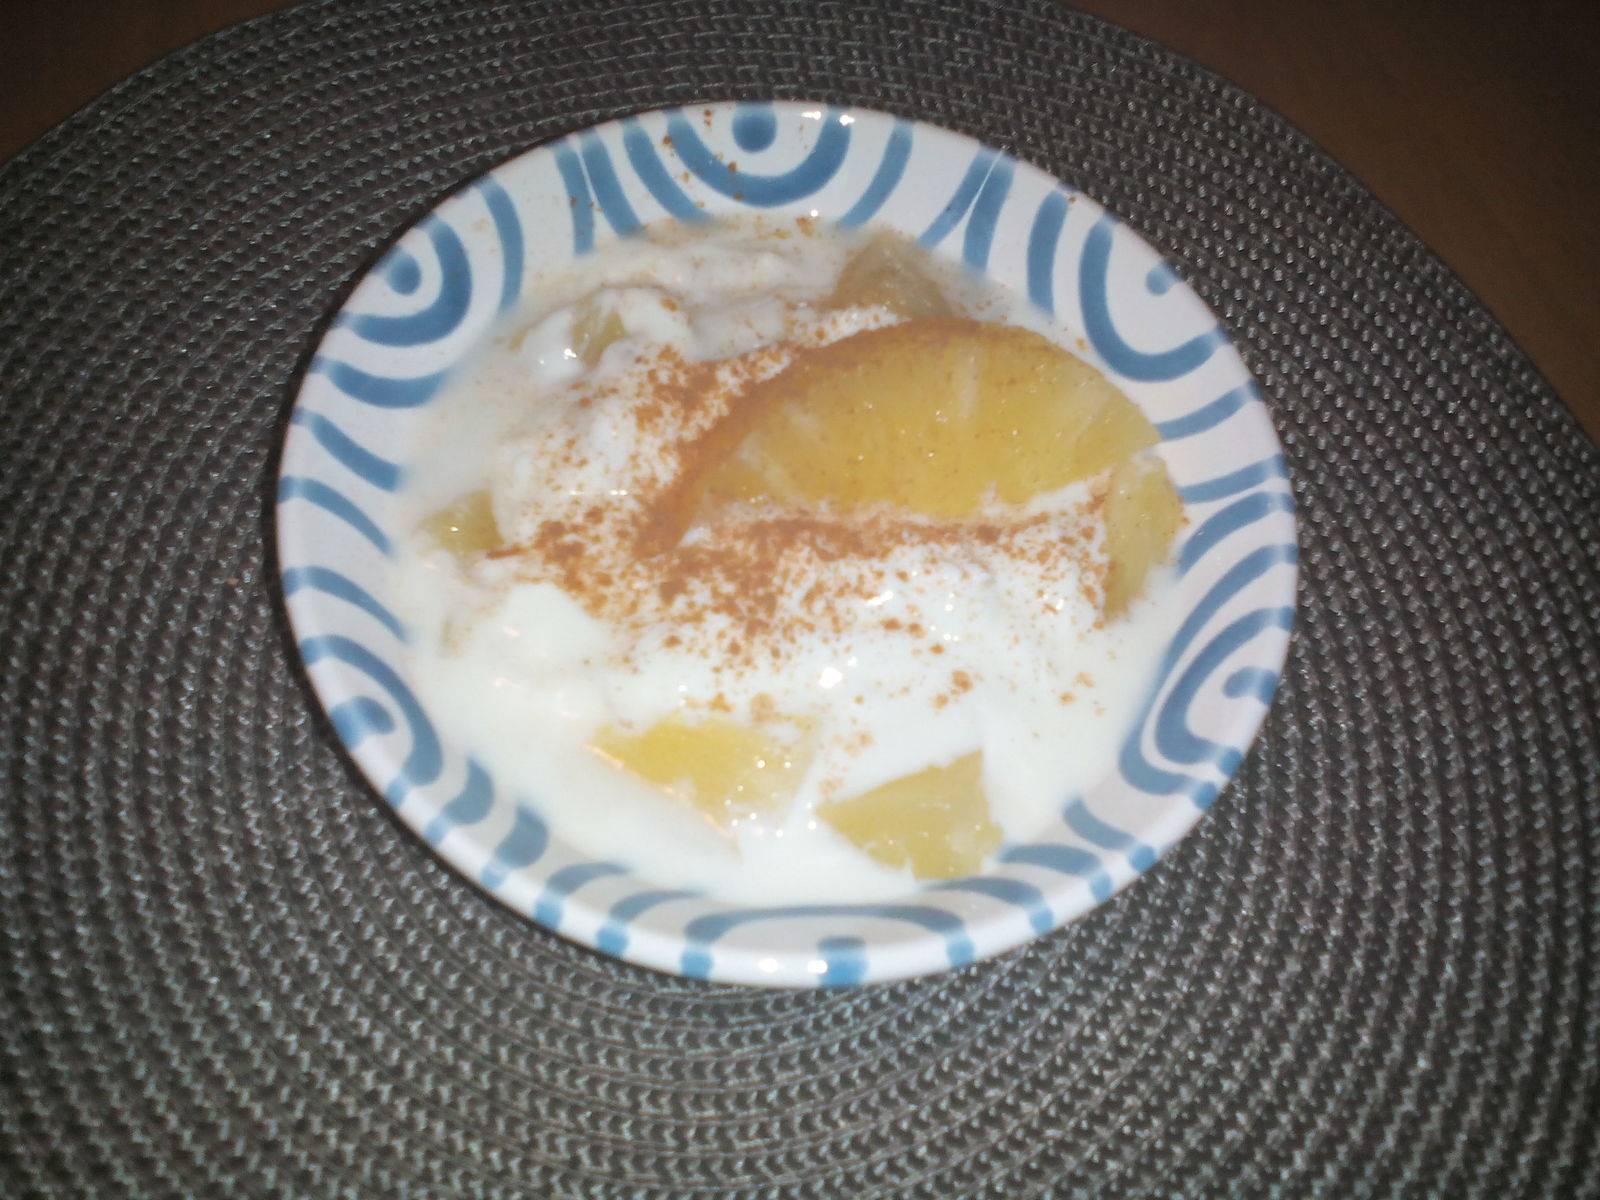 Ananasjoghurt